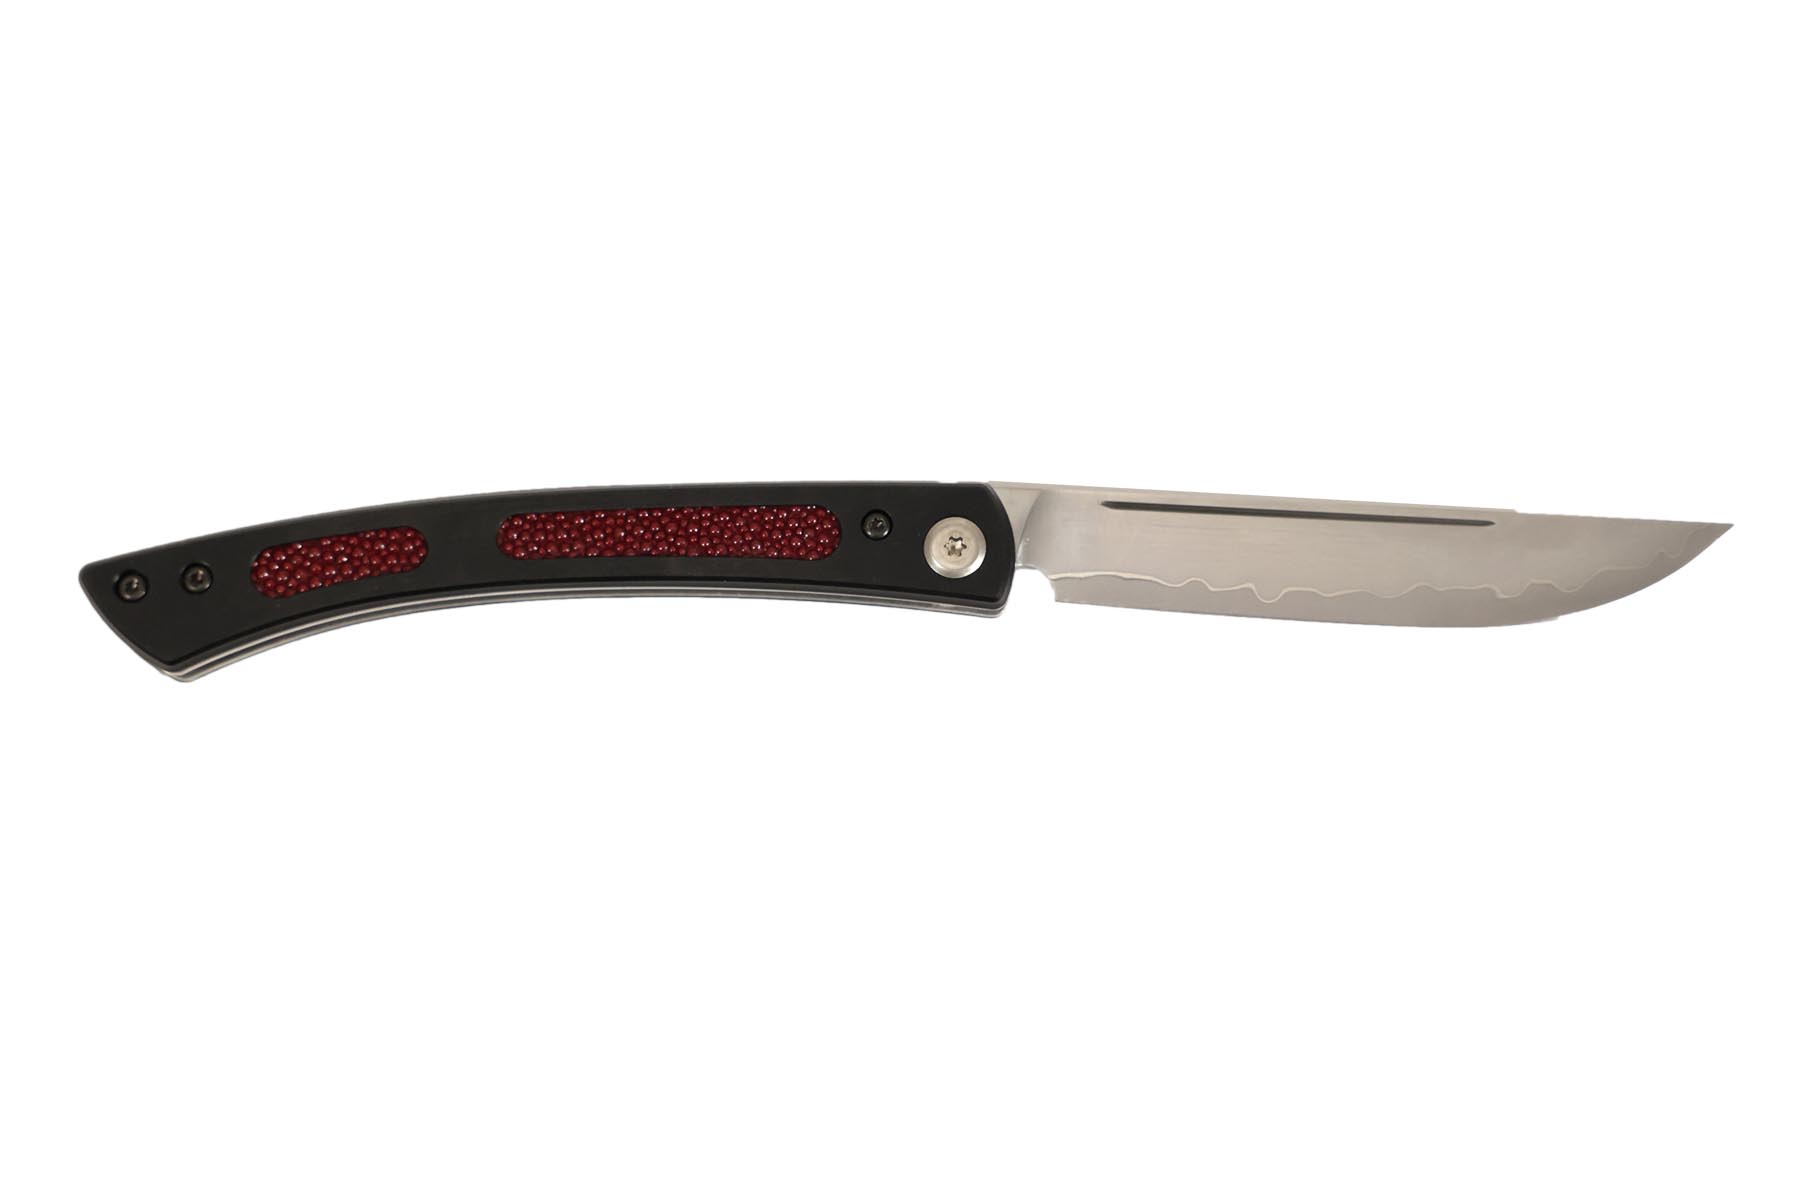 Couteau japonais pliant Mcusta "steak folding knife" Édition limitée - Galuchat rouge